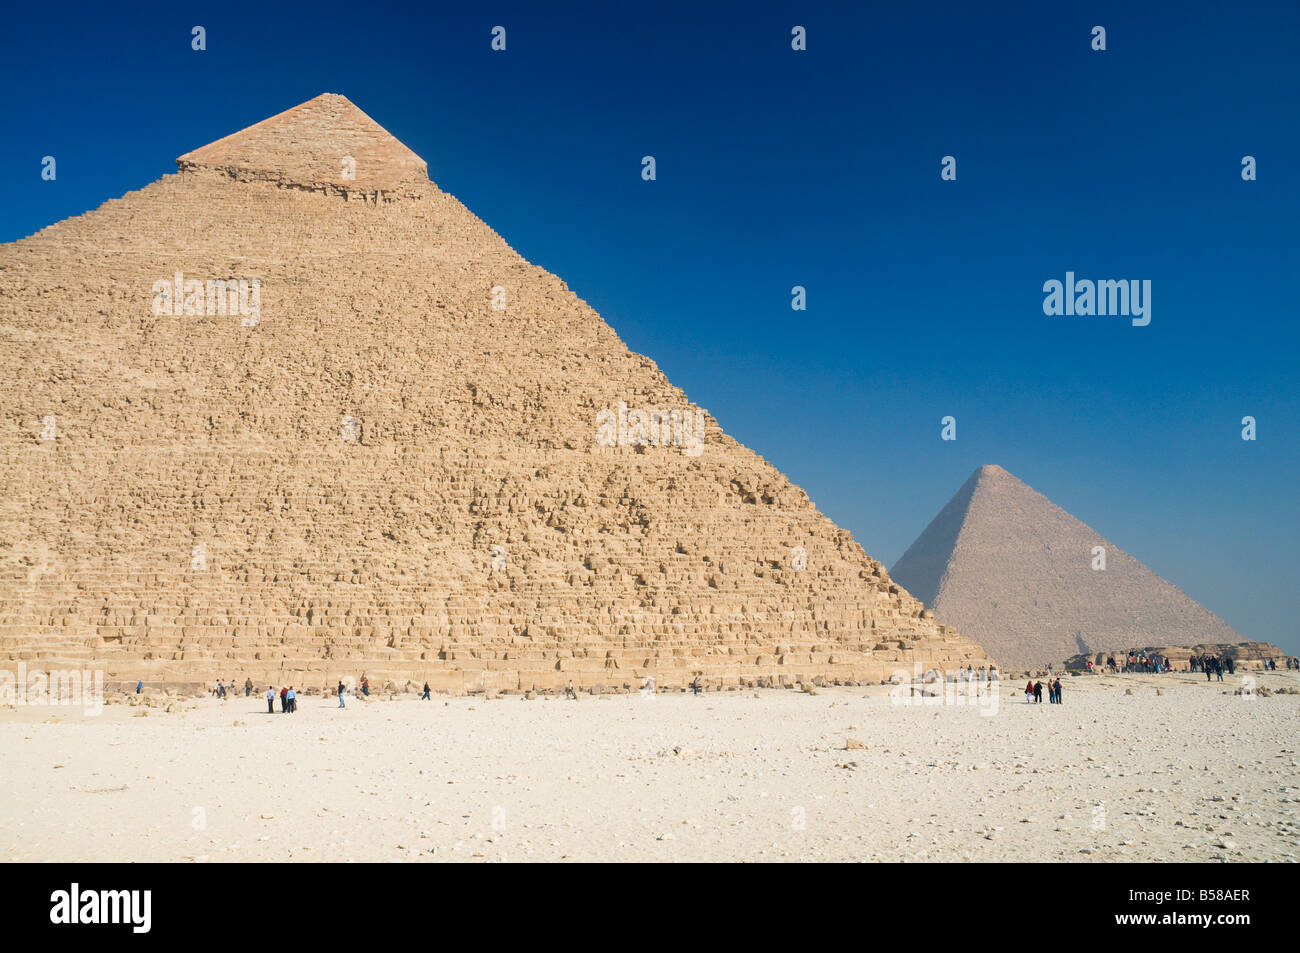 Die Pyramide von Khafre (Chephren) und die große Pyramide von Khufu (Cheops) in den Hintergrund, Gizeh, Ägypten, Nordafrika, Afrika Stockfoto